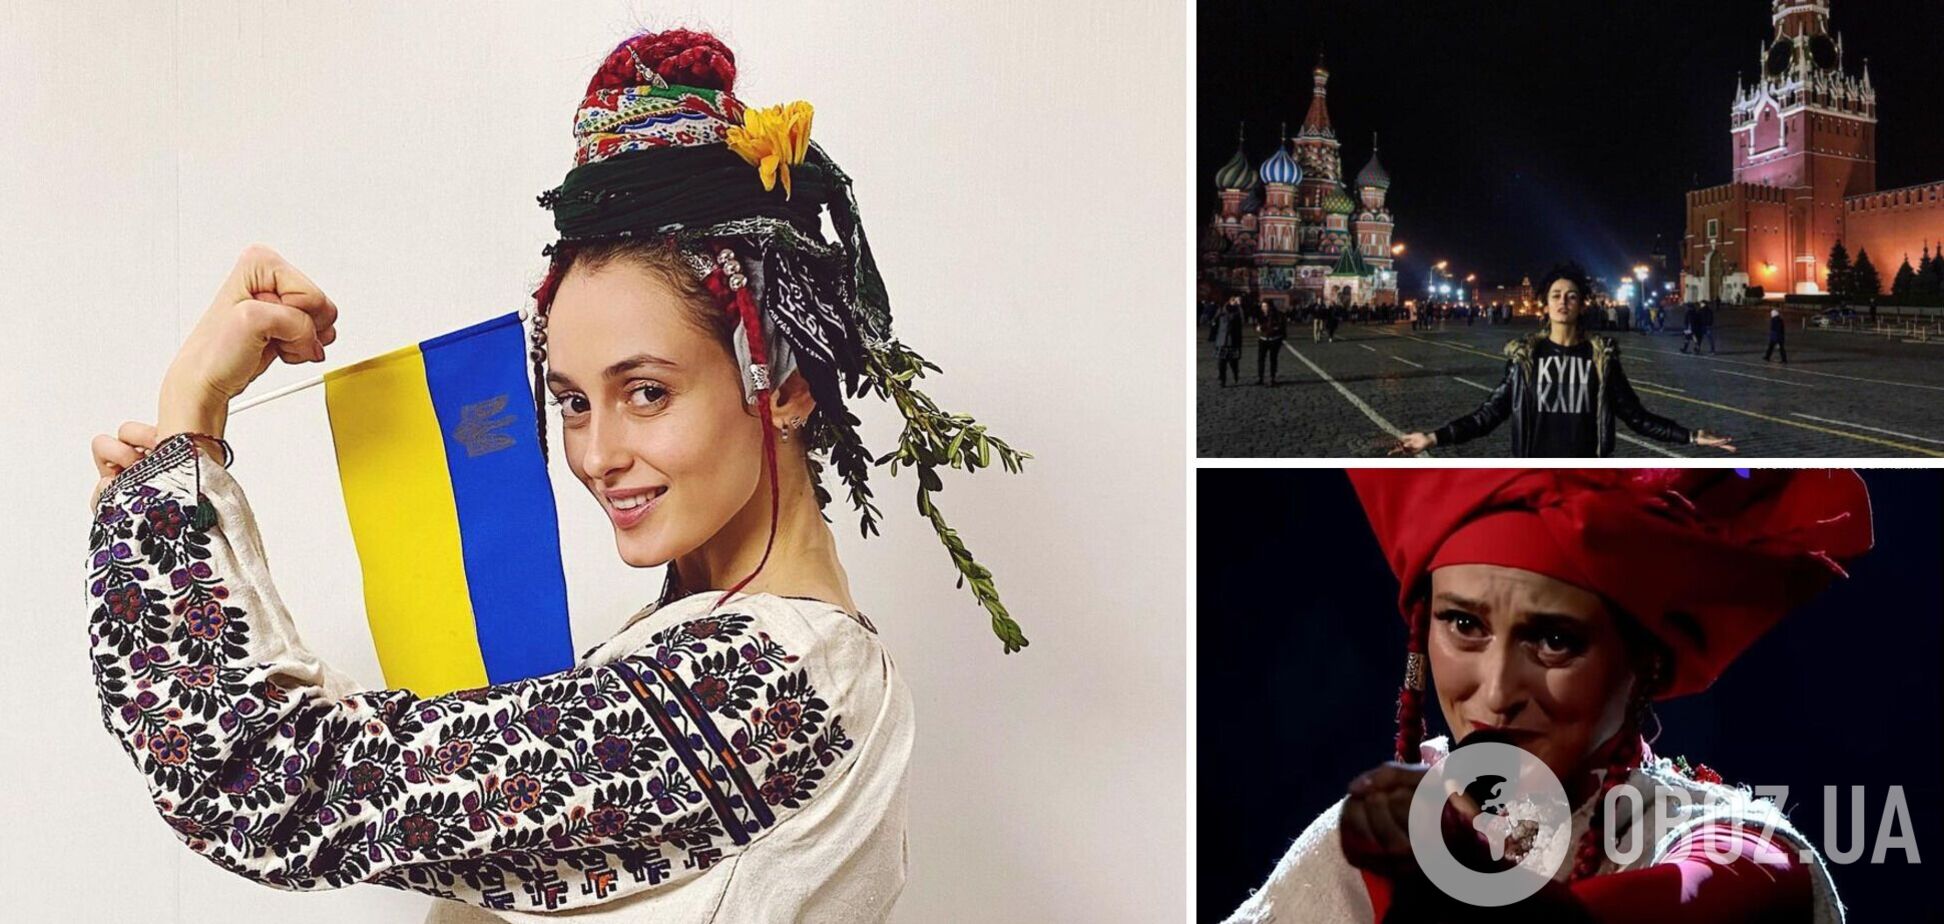 Алина Паш, выступавшая в Крыму и ездившая в Москву, призналась, что сожалеет о коллаборации с россиянами